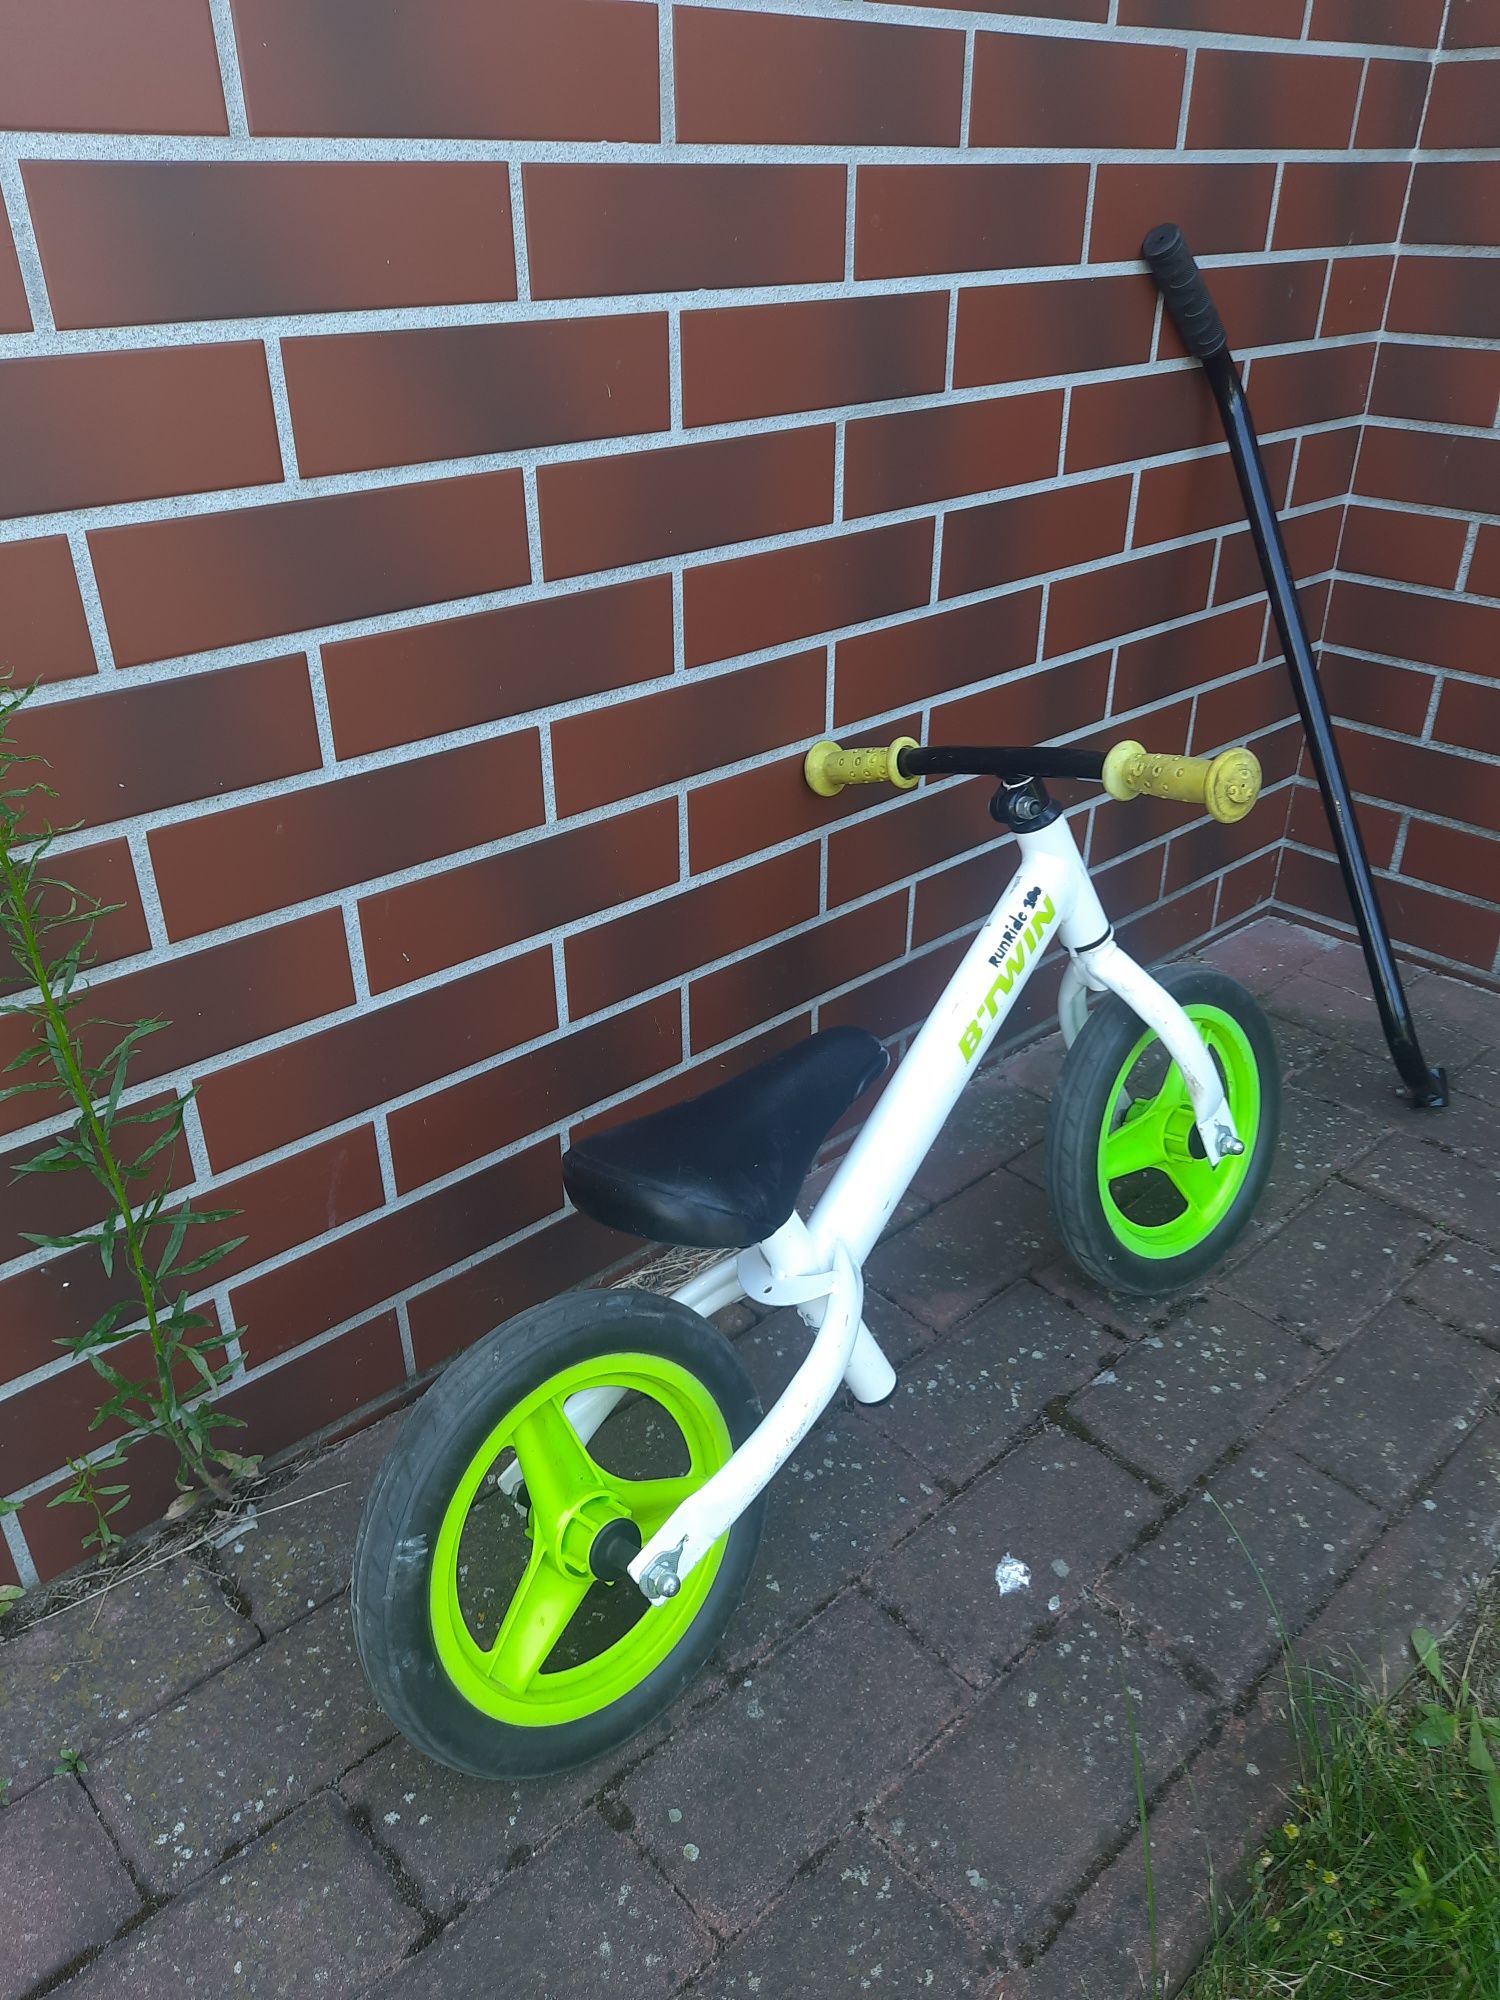 Rowerek dla dzieci